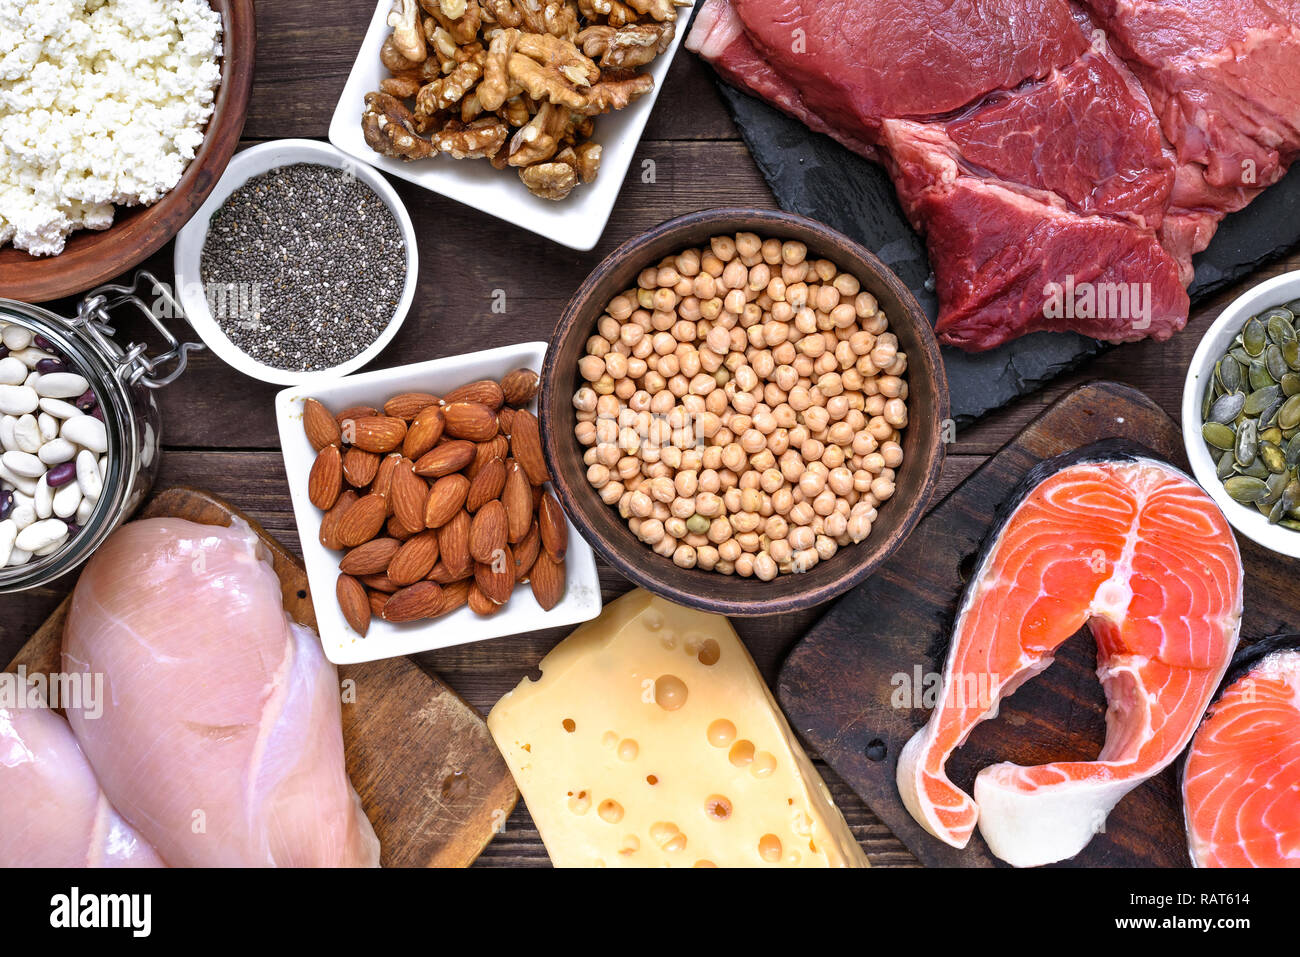 Natürliche eiweißhaltige Lebensmittel - Fleisch, Geflügel, Eier, Milchprodukte, Nüsse und Bohnen. Gesunde Ernährung und Diät Konzept. top View Stockfoto